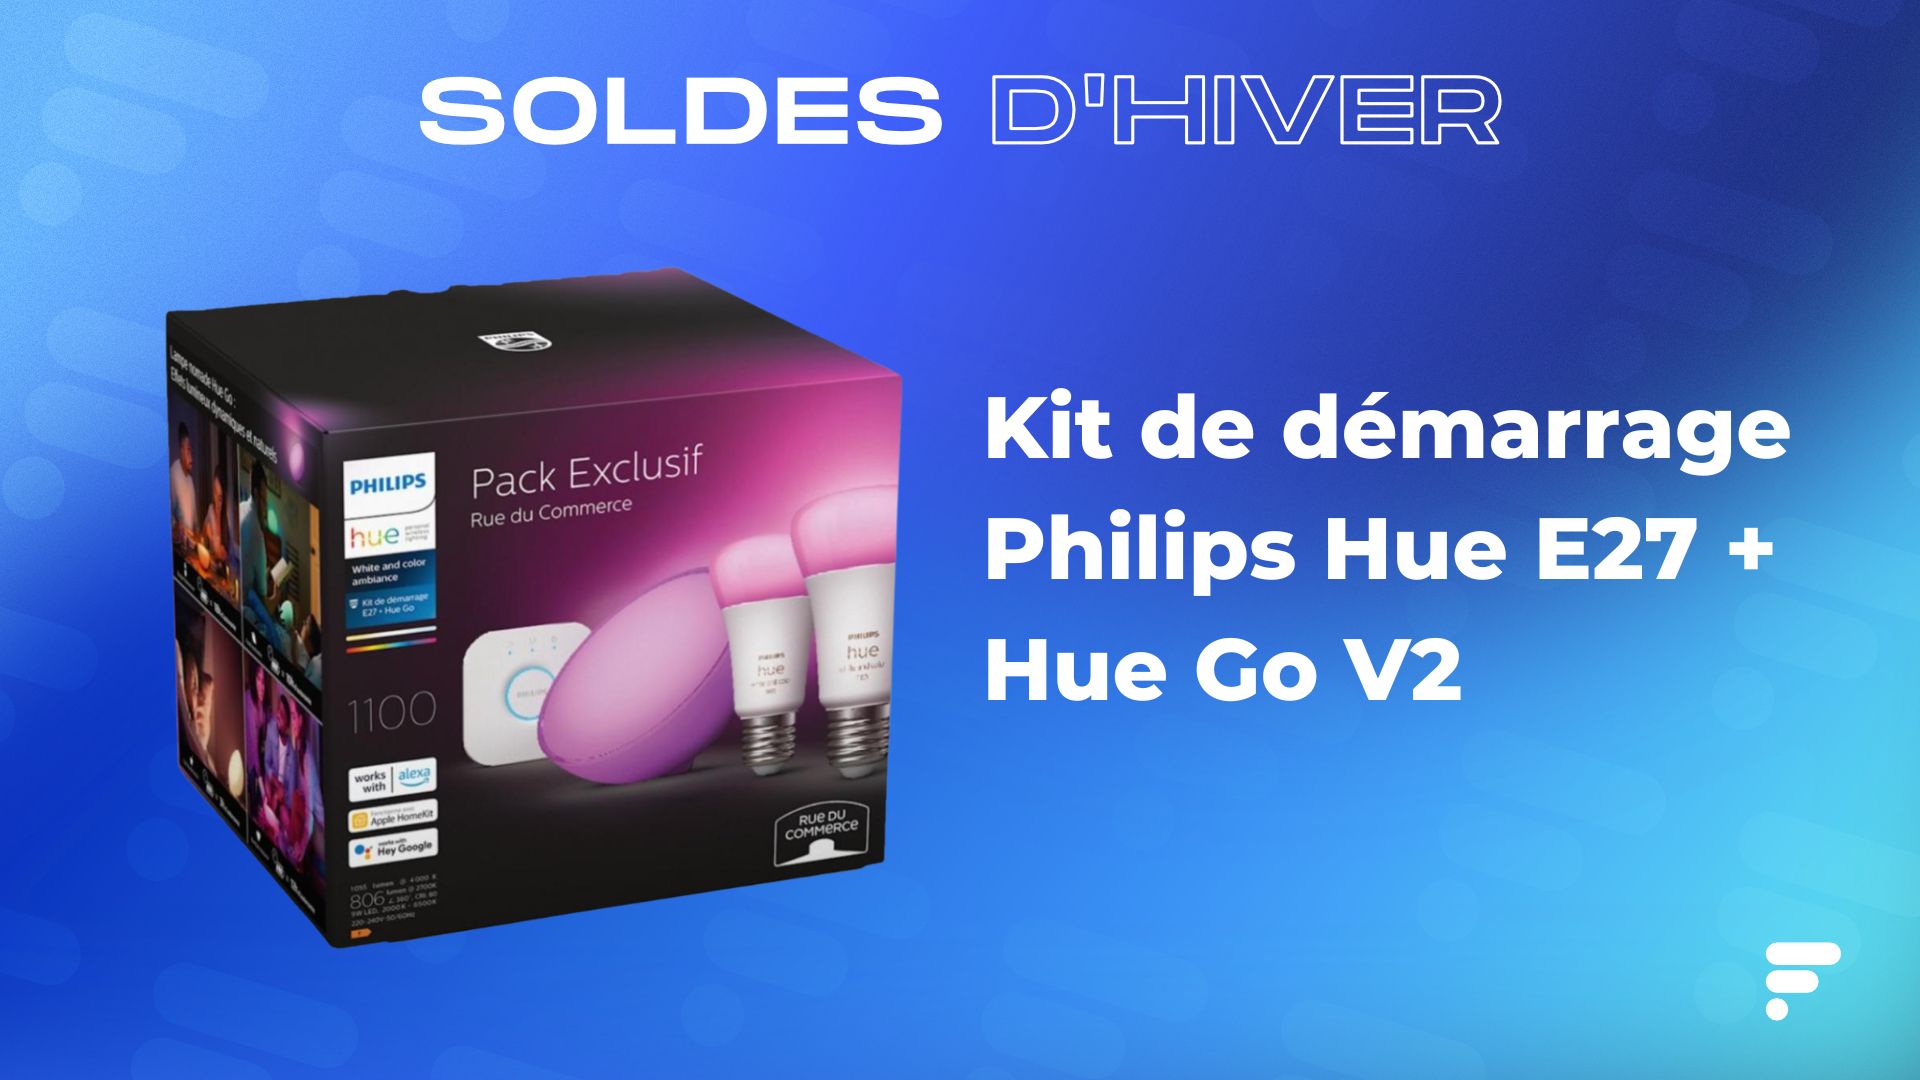 Le kit Philips Hue en promo est idéal pour se lancer dans l